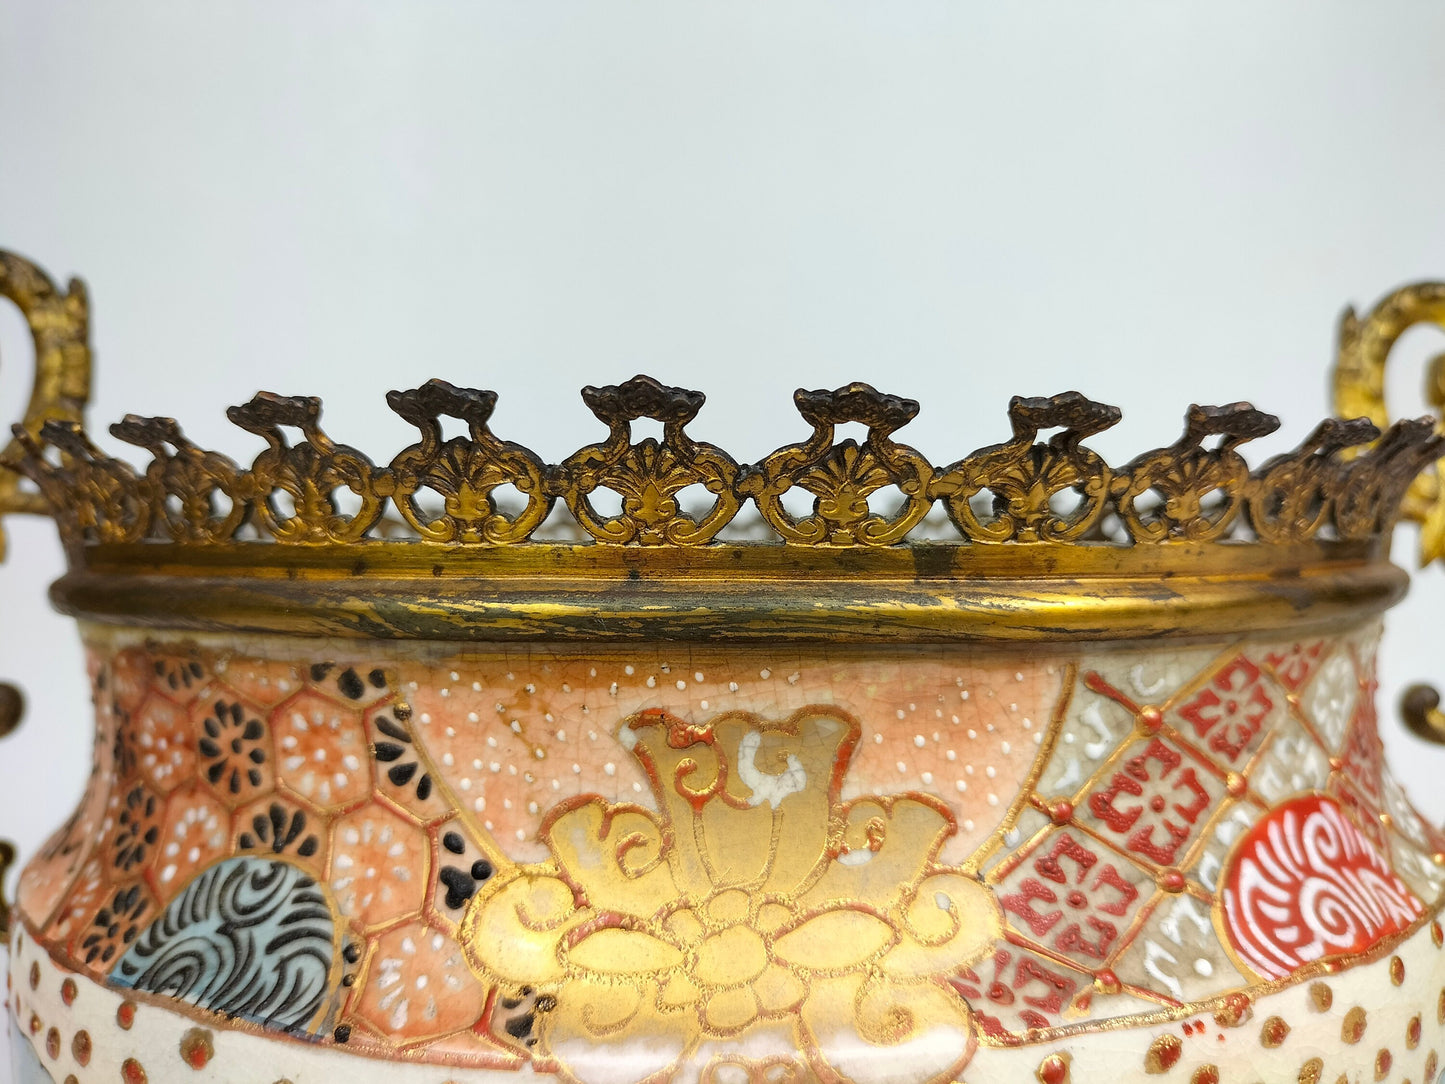 Bình satsuma cổ của Nhật Bản được gắn bằng đồng mạ vàng // Thời Meijji - thế kỷ 19